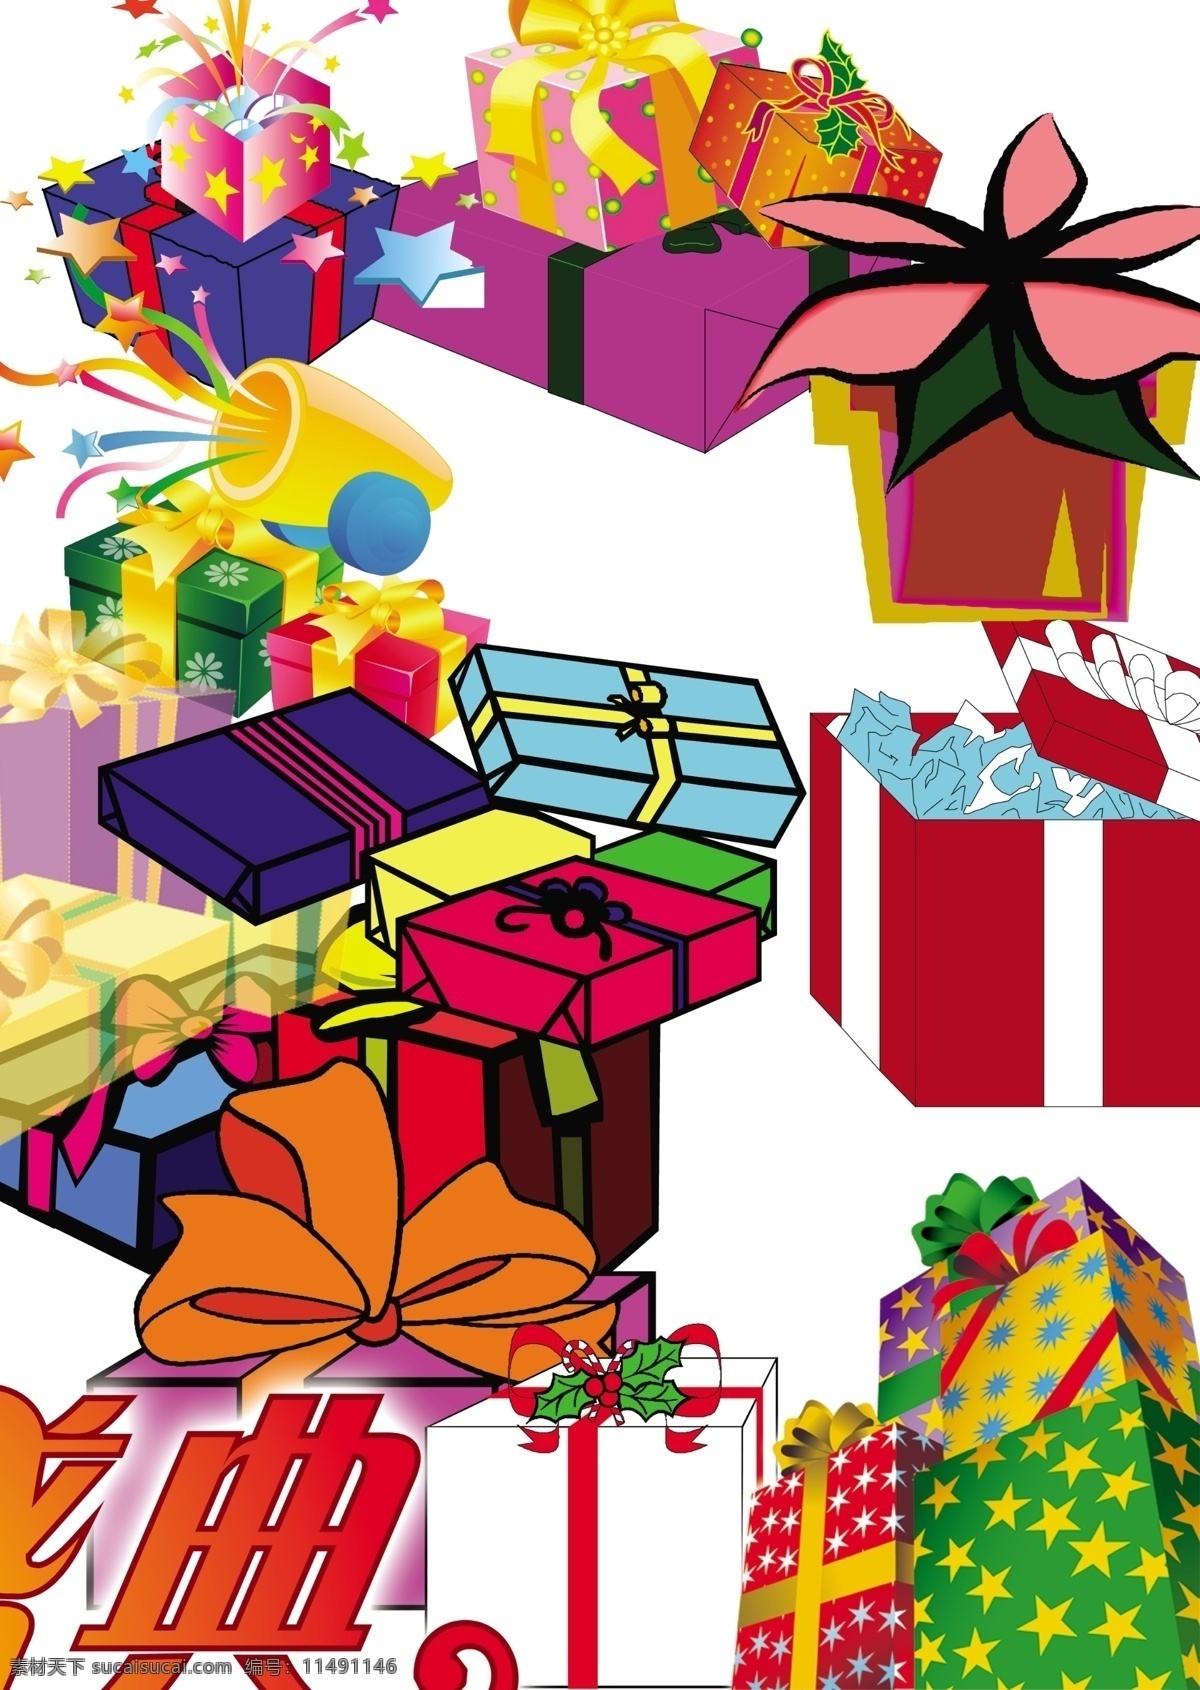 分层 包装 包装盒 彩色 盒子 盒子素材 节日广告 礼盒 礼品 礼物 盒 模板下载 礼物盒 丝带 psd源文件